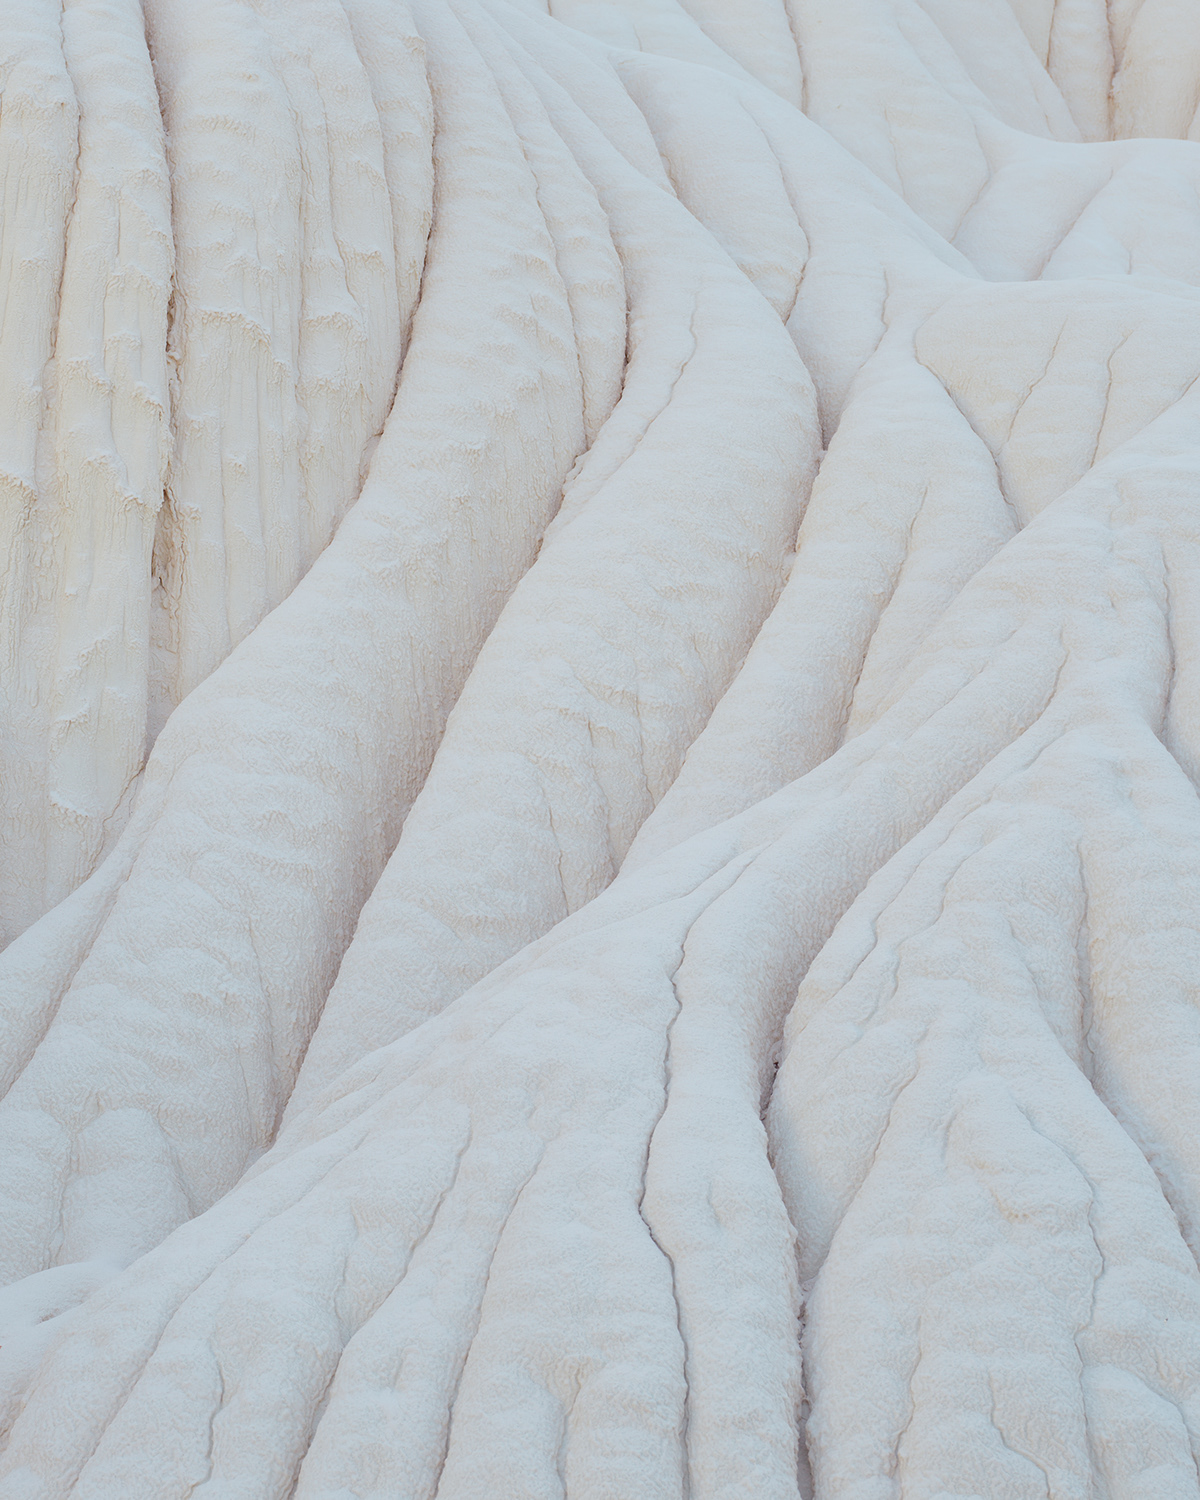 erosion formation ghostly Landscape Nature otherworldly sandstone sculpture strange White